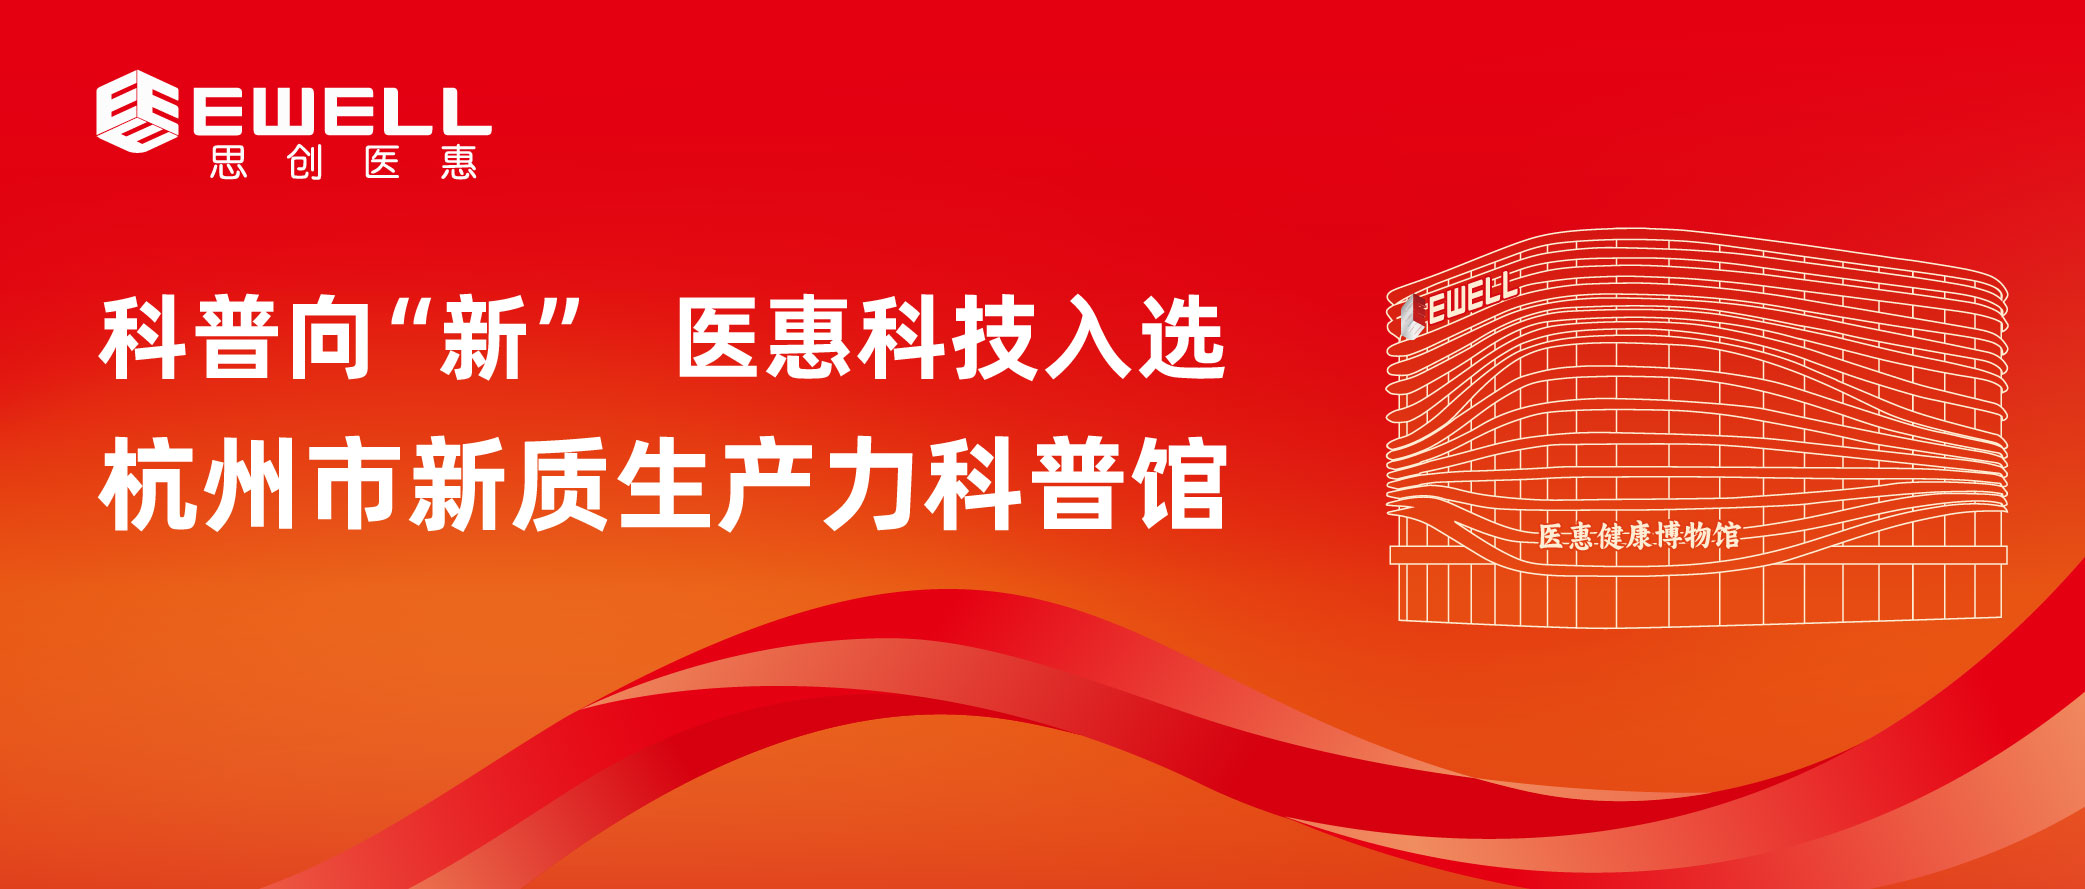 科普向“新” 医惠科技入选杭州市新质生产力科普馆